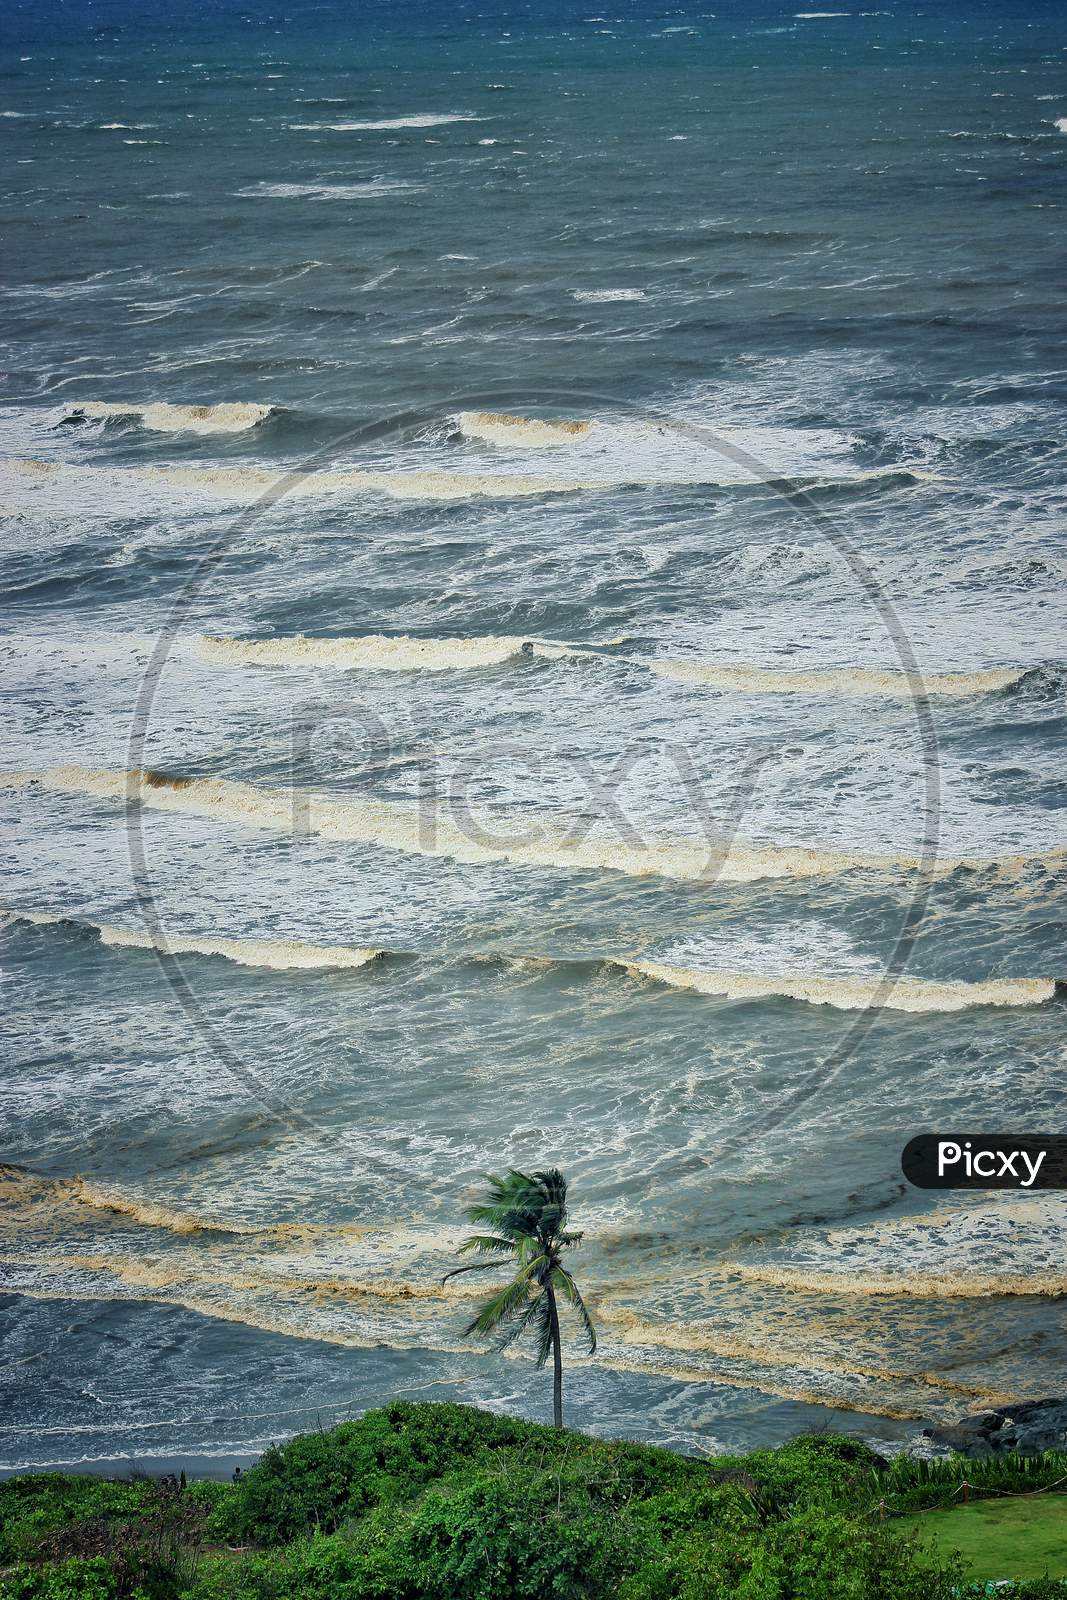 Sea Waves Striking Beach in Goa